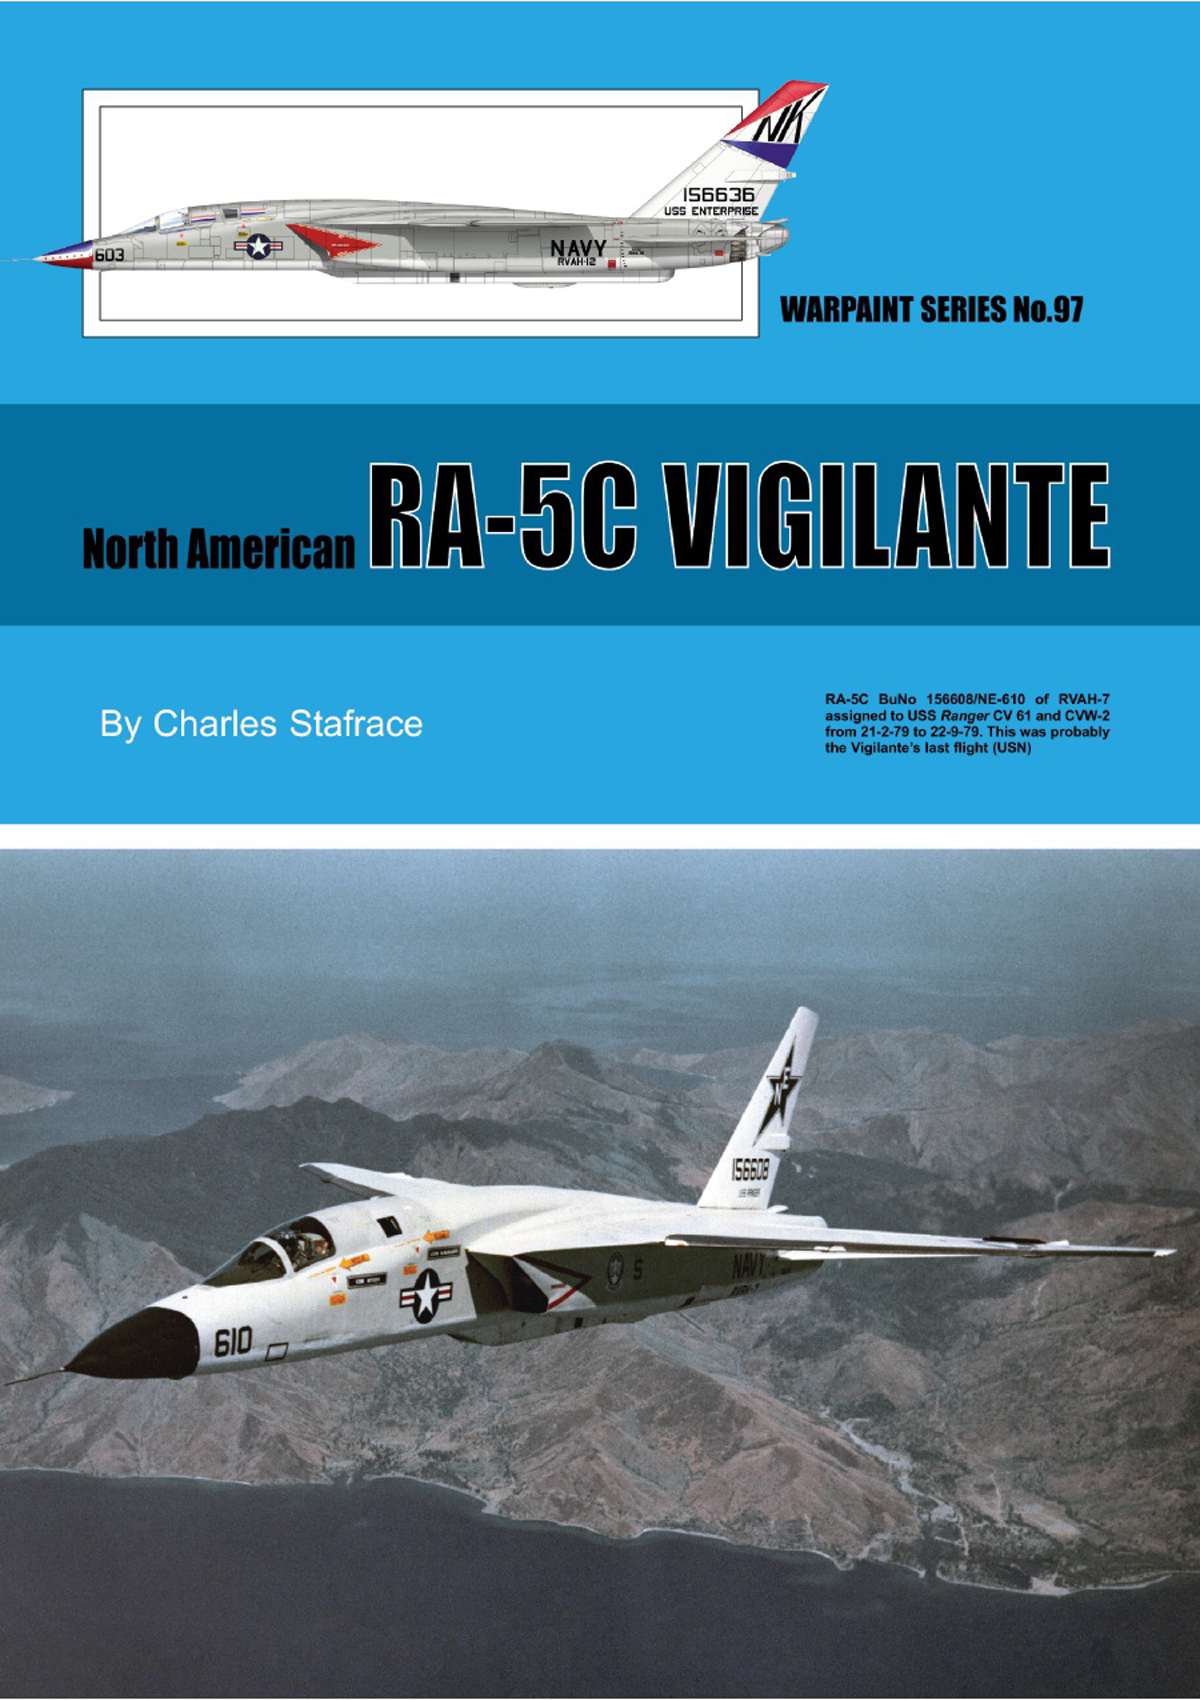 N97 - North American RA-5C Vigilante